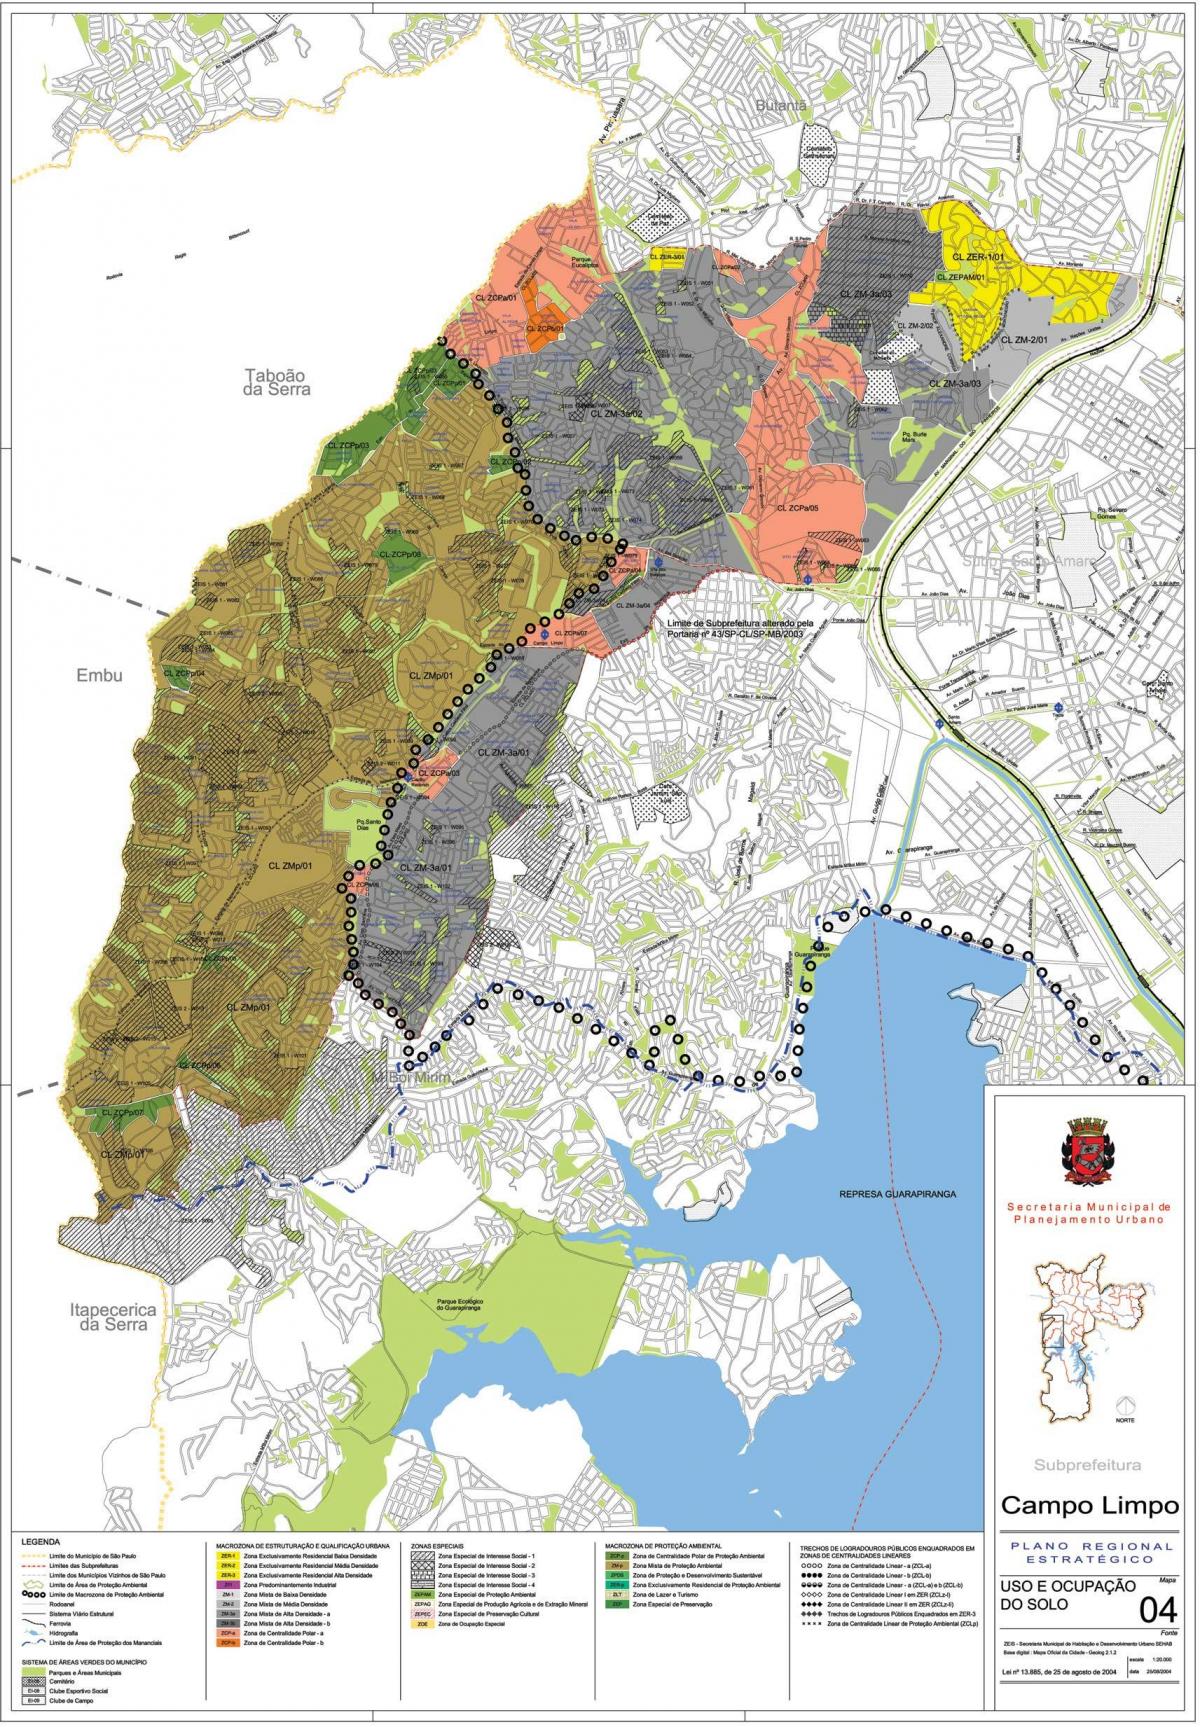 Peta Campo Limpo São Paulo - Pekerjaan tanah